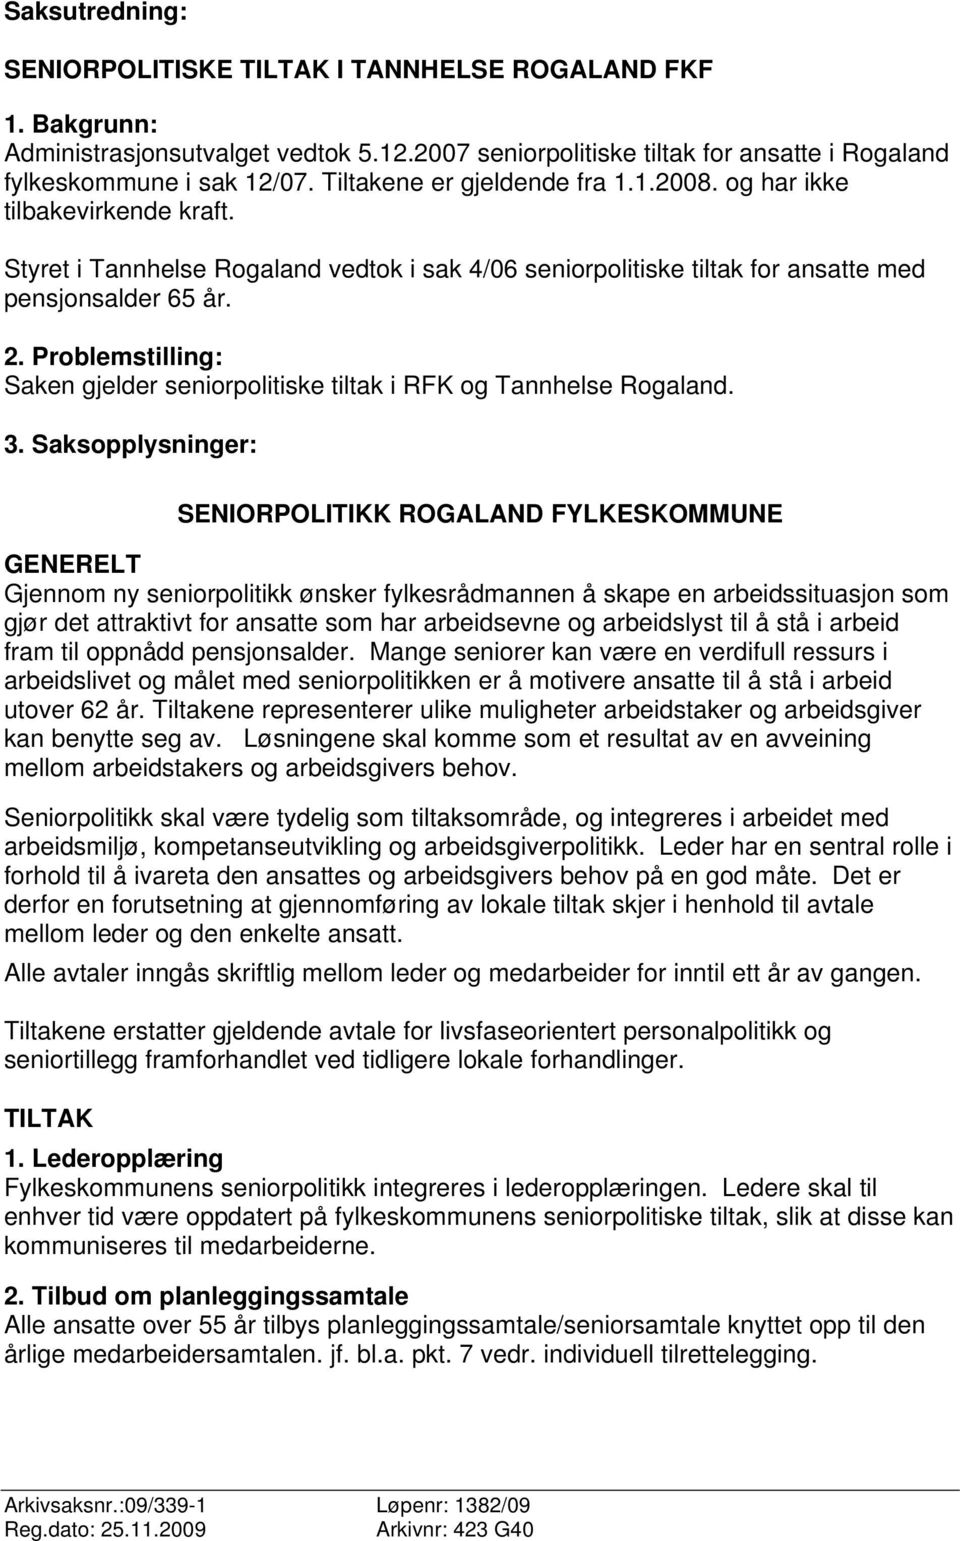 Problemstilling: Saken gjelder seniorpolitiske tiltak i RFK og Tannhelse Rogaland. 3.